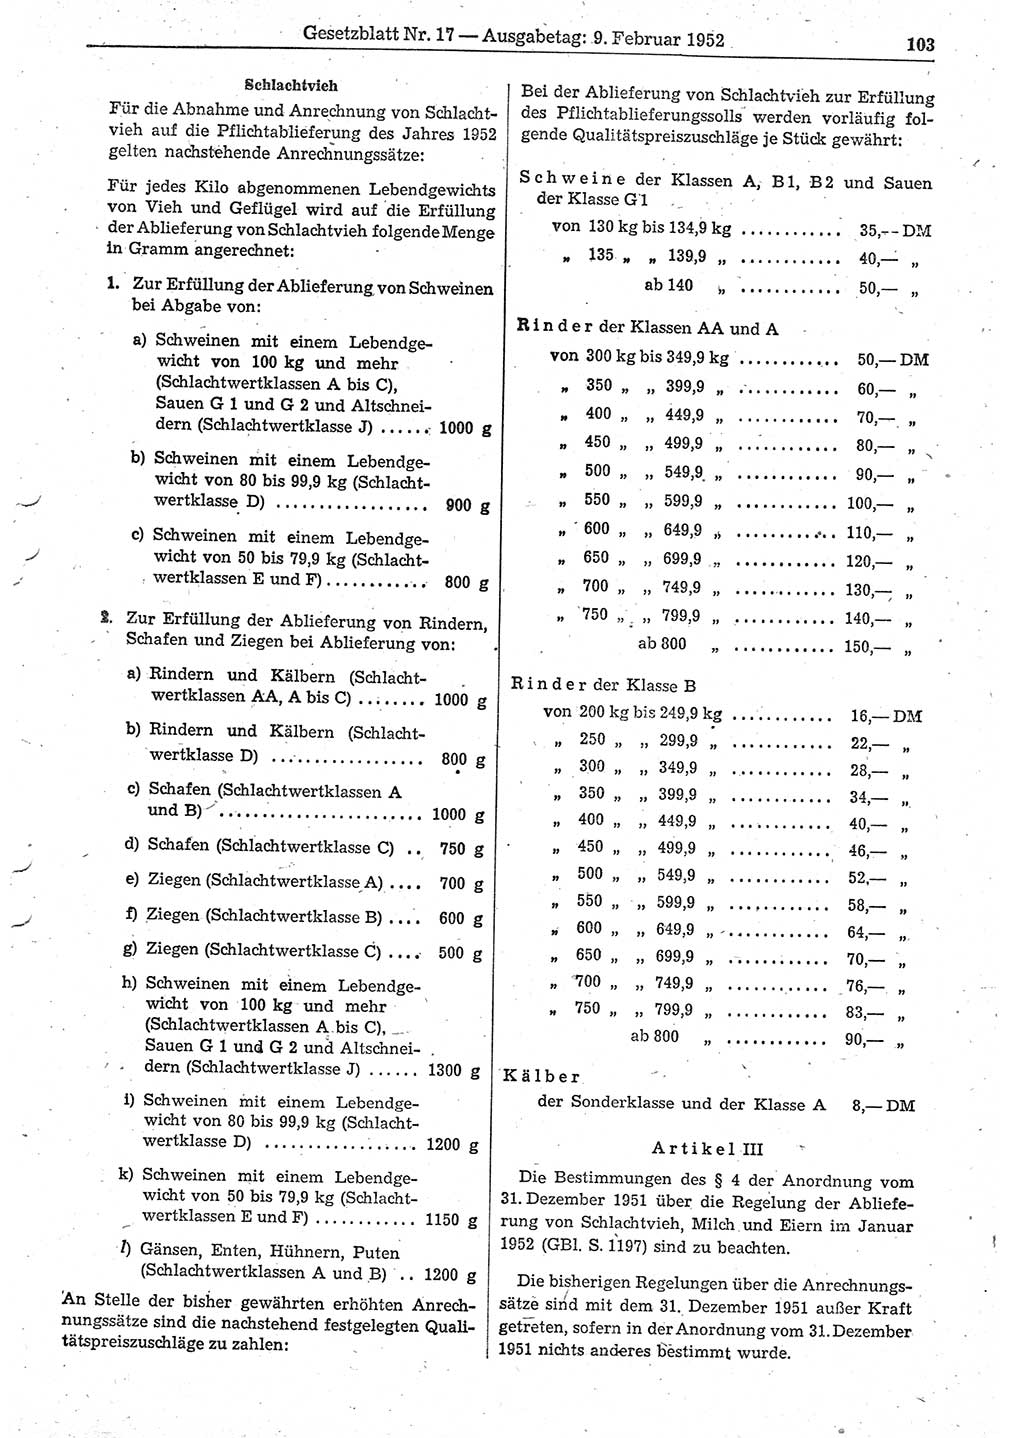 Gesetzblatt (GBl.) der Deutschen Demokratischen Republik (DDR) 1952, Seite 103 (GBl. DDR 1952, S. 103)